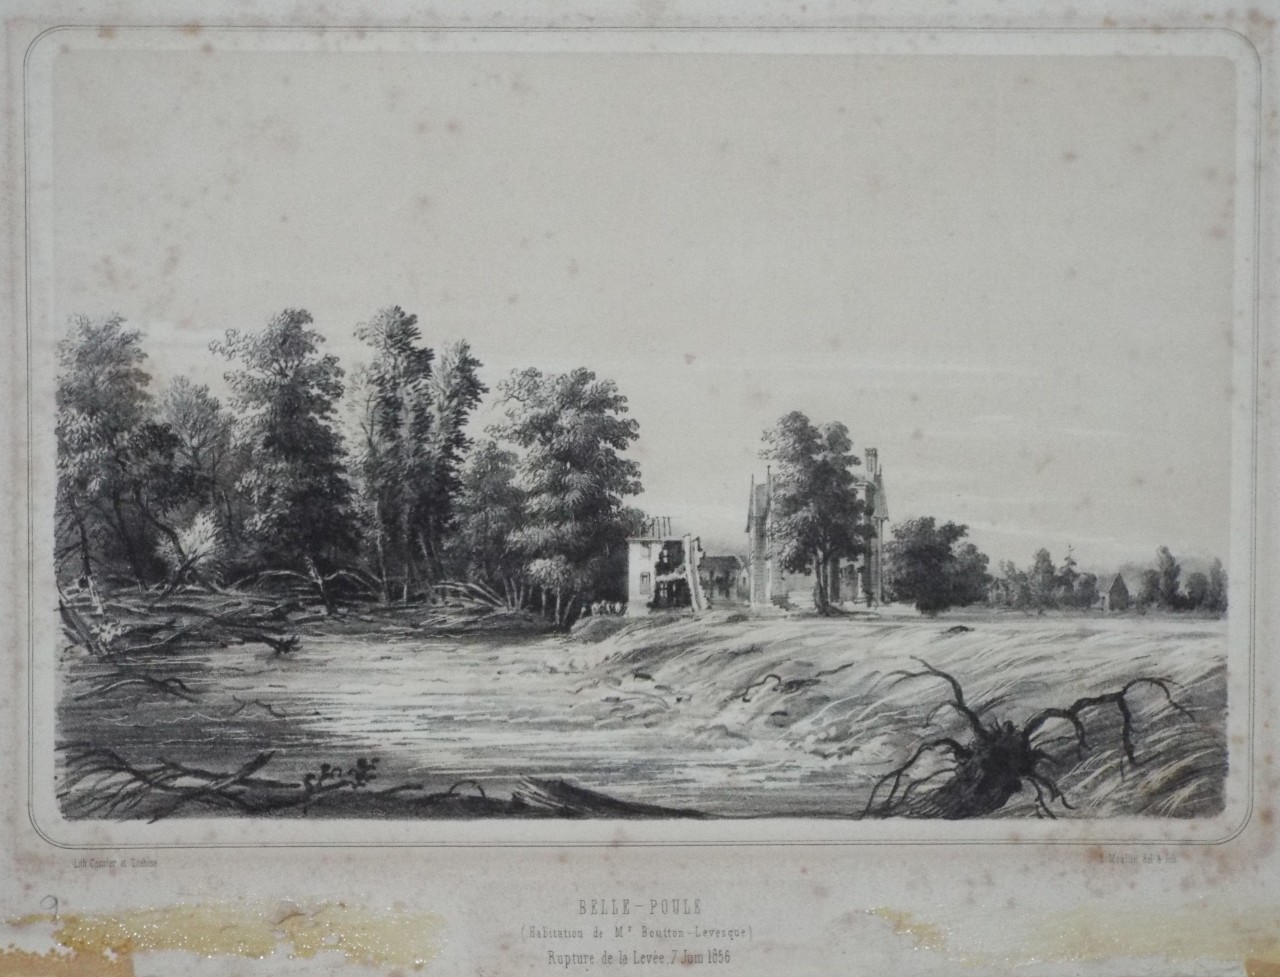 Lithograph - Belle-Poule (Habitation de Mr. Boutton-Levesque) Rupture de la Levvee, 7 Juin 1856. - Moullin